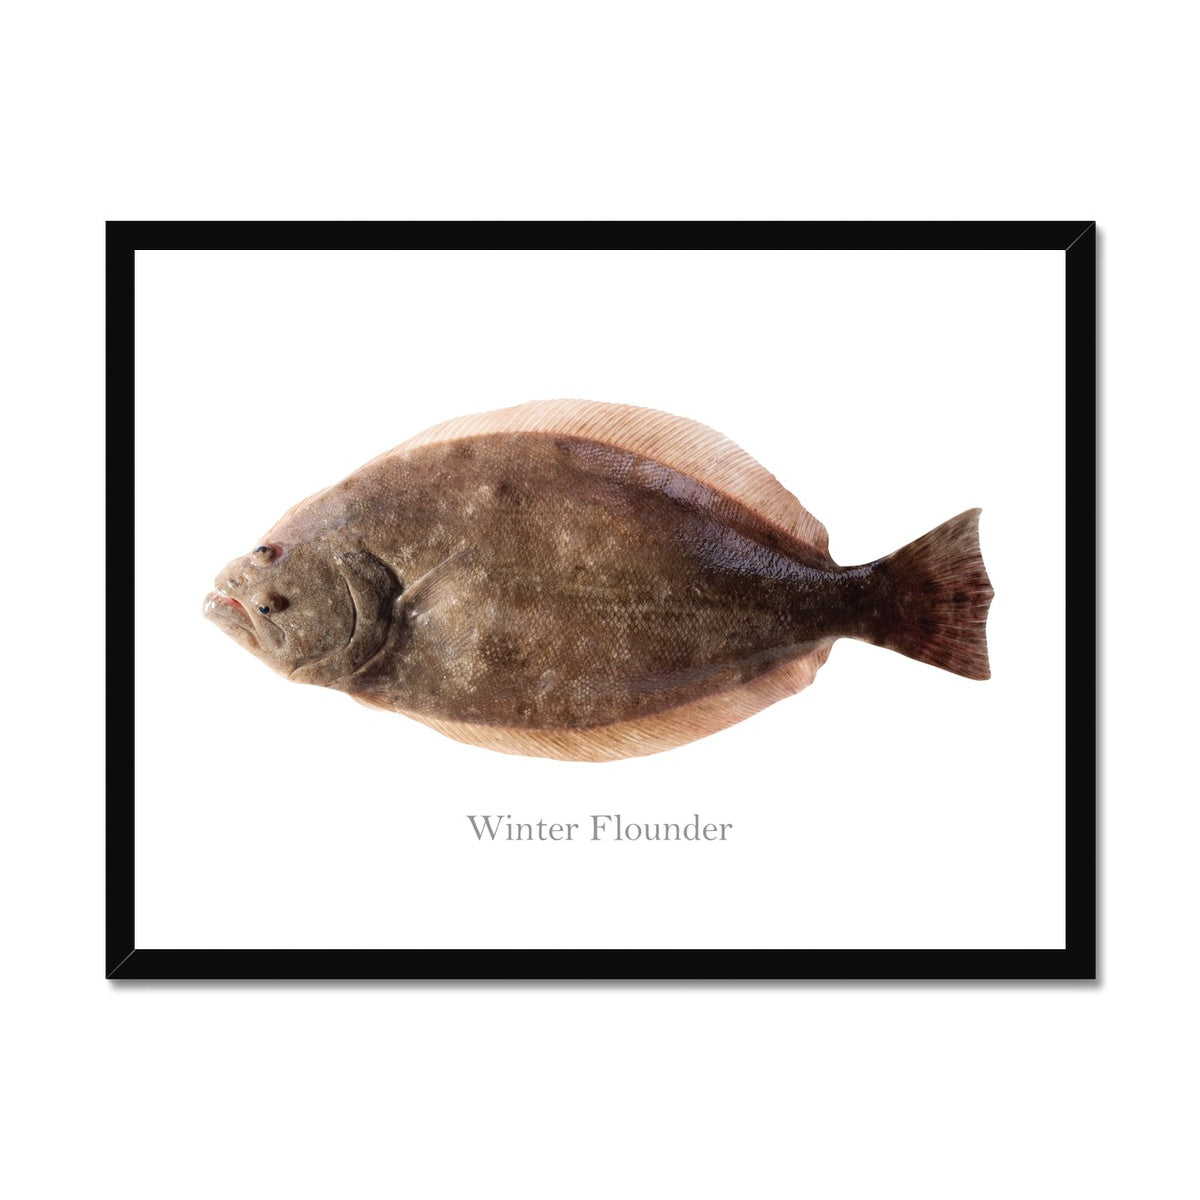 Winter Flounder - Framed Print